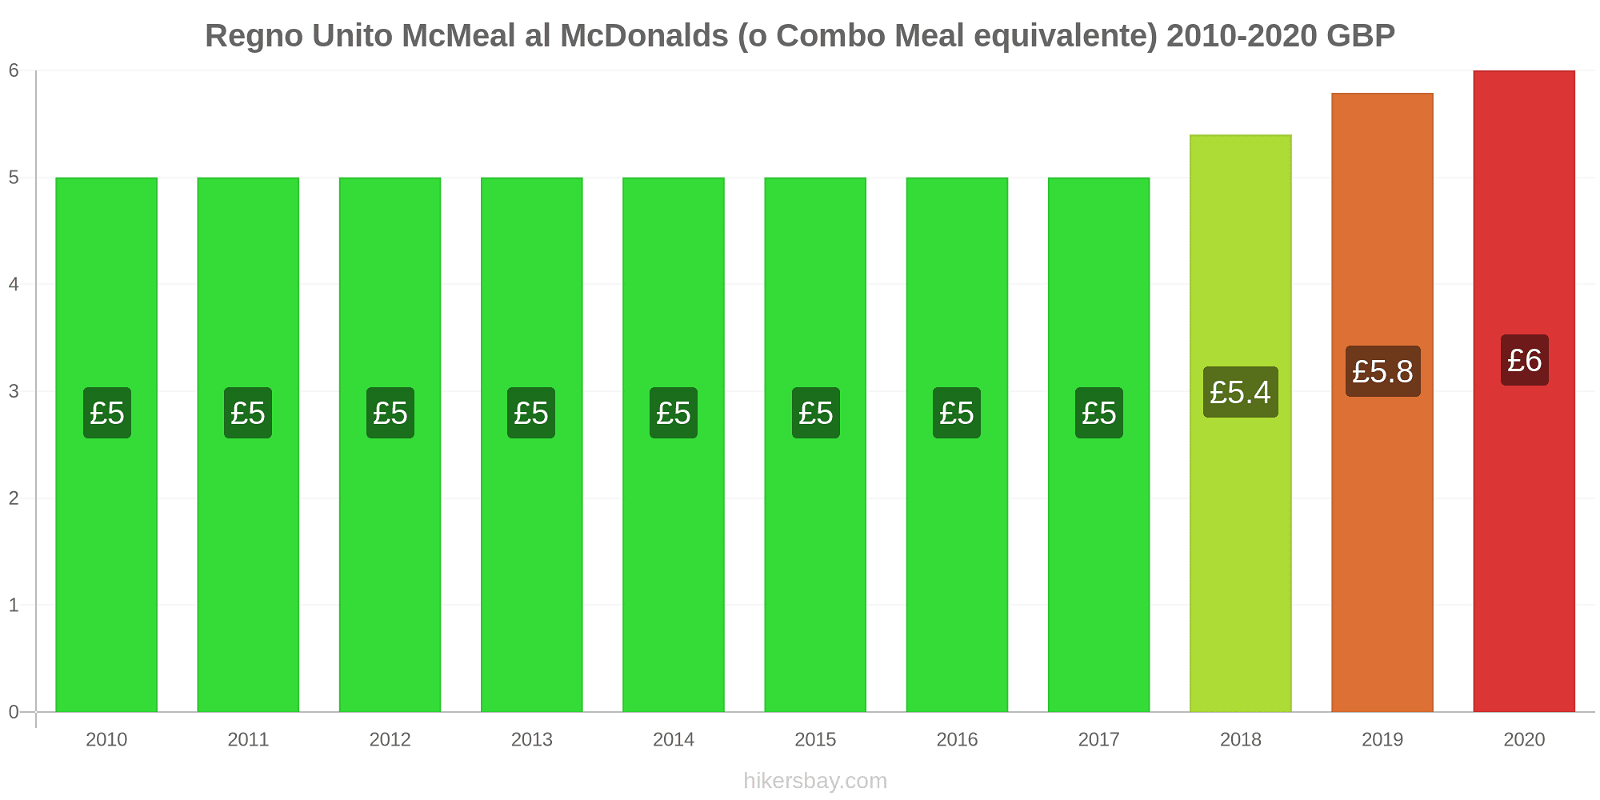 Regno Unito variazioni di prezzo McMeal al McDonalds (o in un equivalente fastfood) hikersbay.com